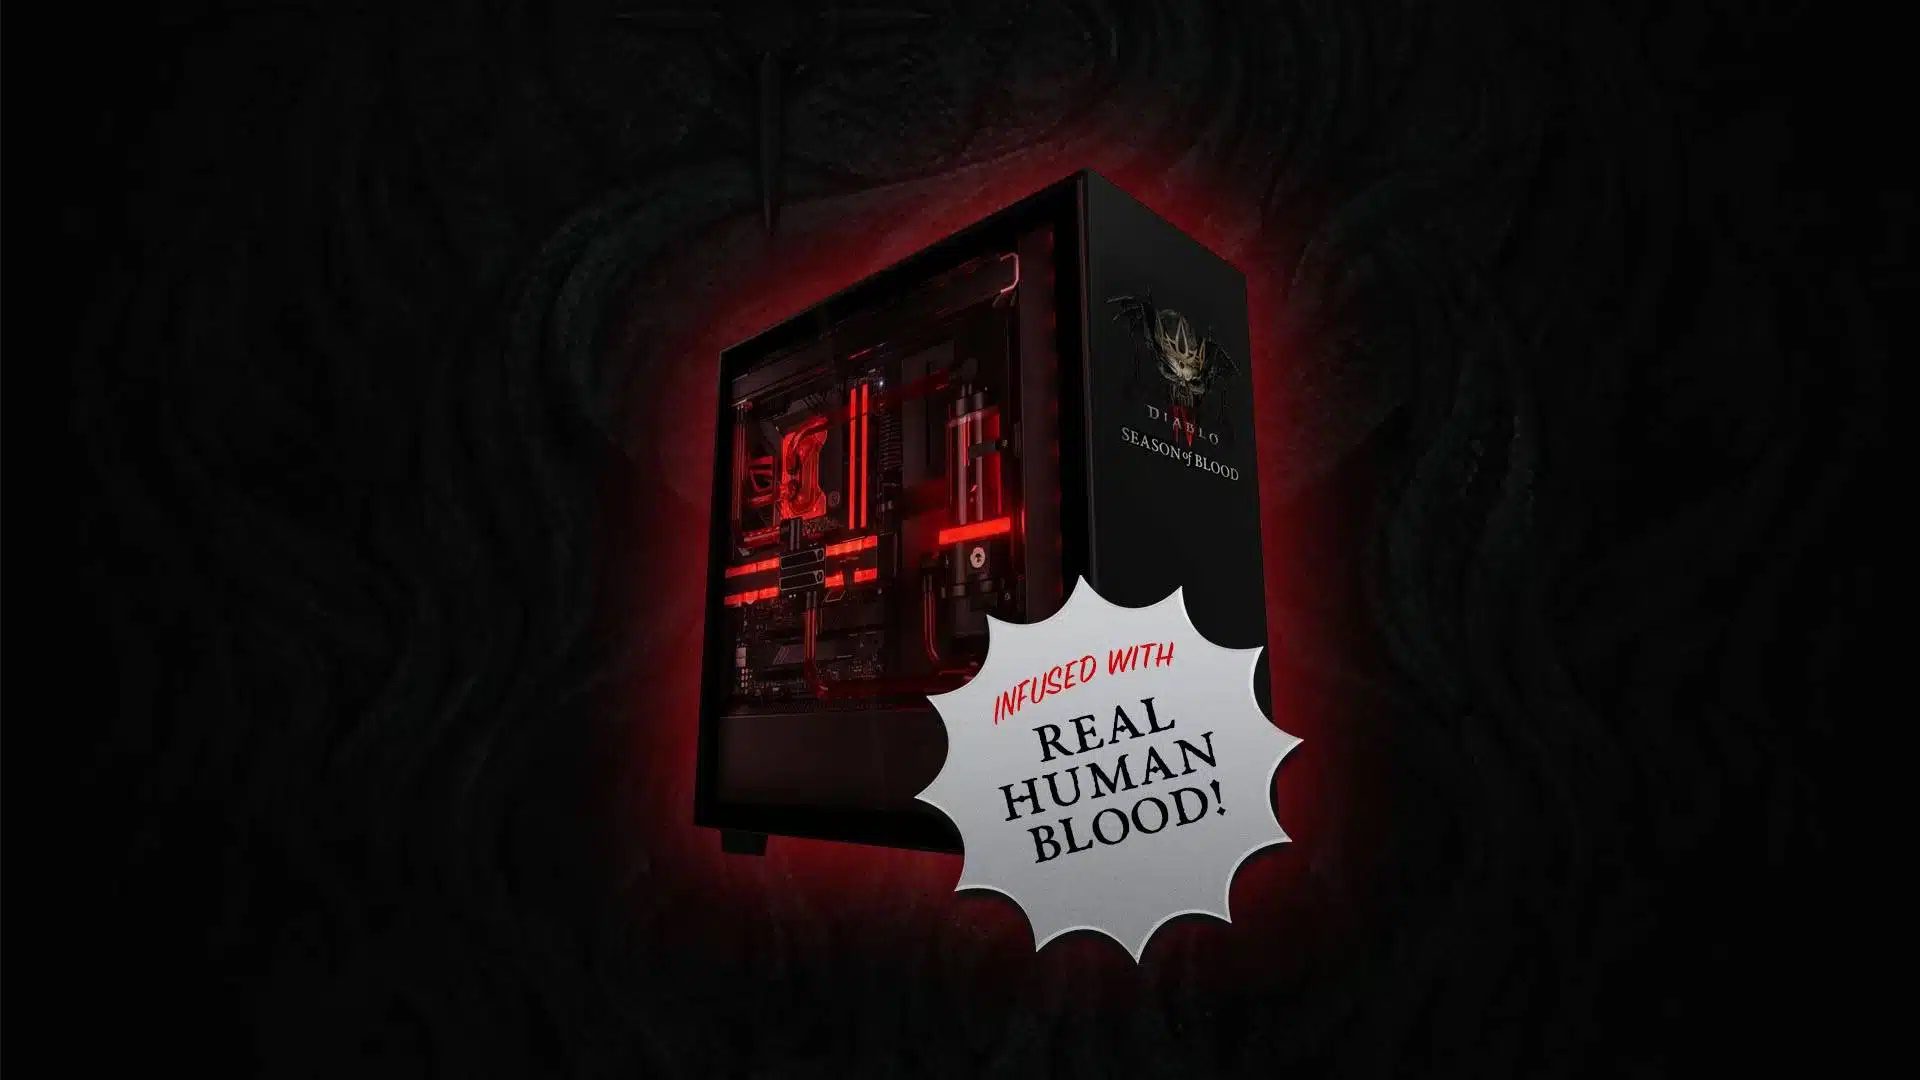 PC chơi game Diablo IV được làm mát bằng máu người thật